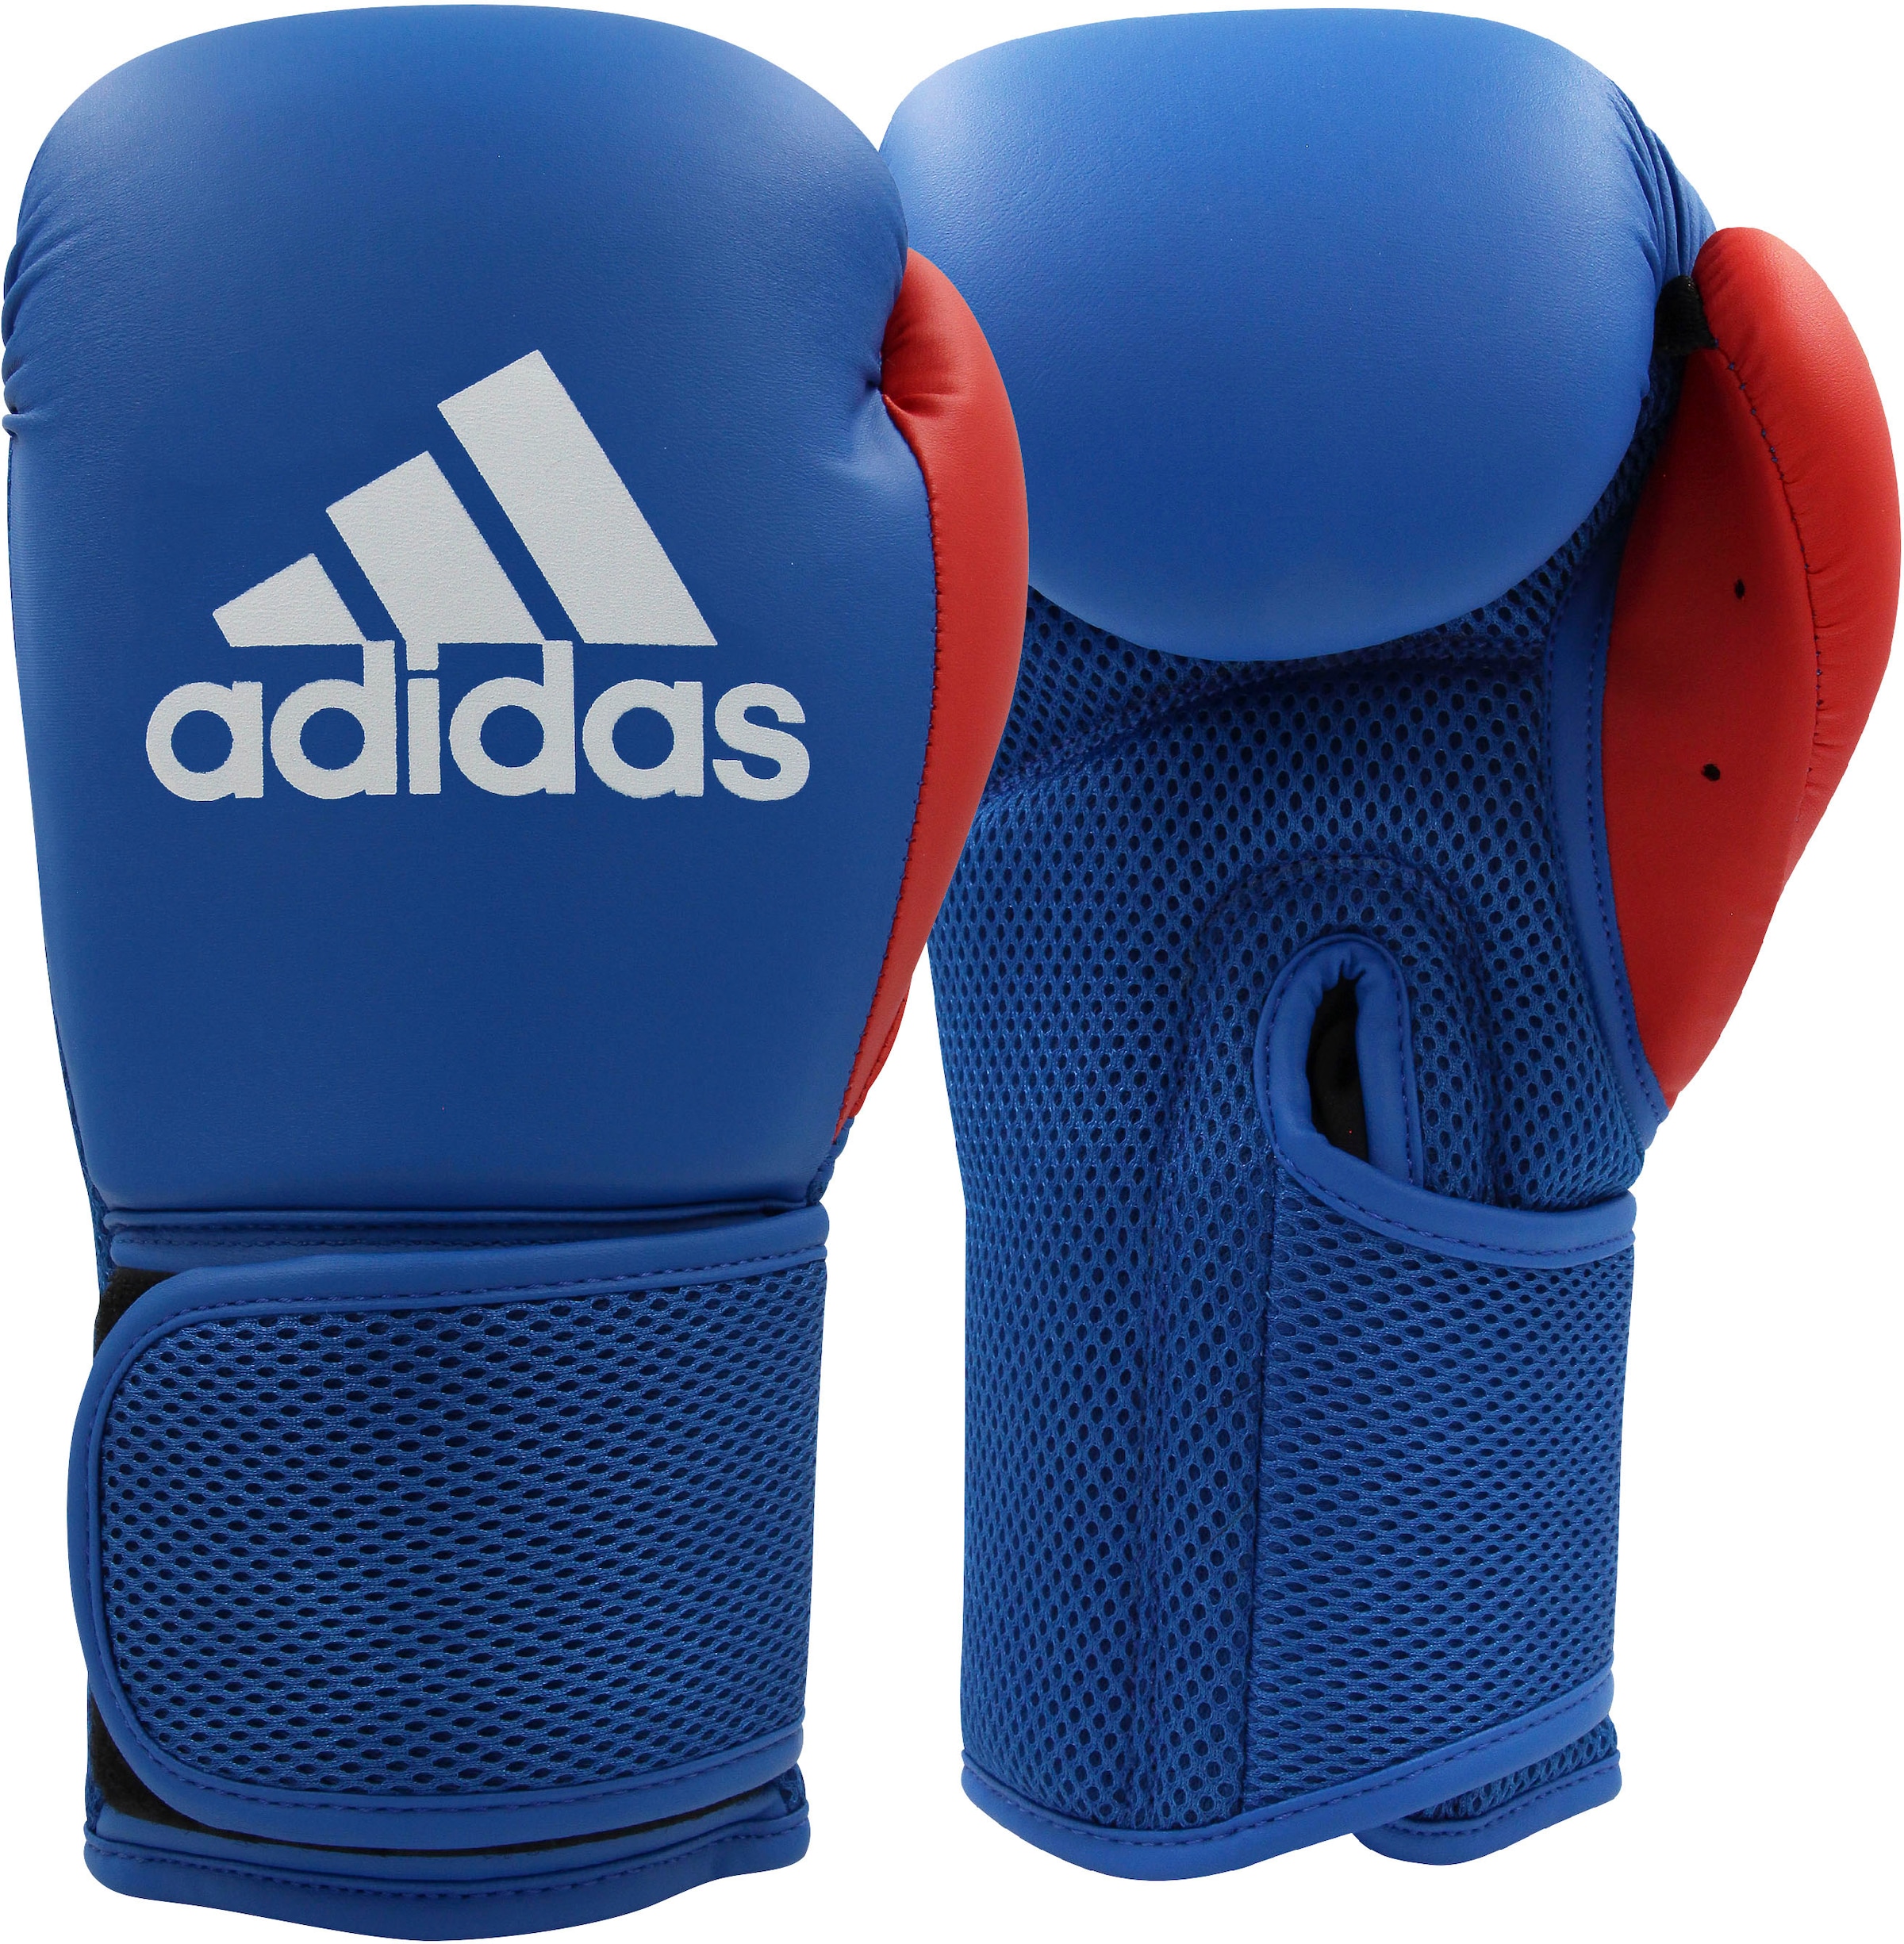 adidas Performance Pratze »Kids Boxing Kit 2« bestellen bei OTTO